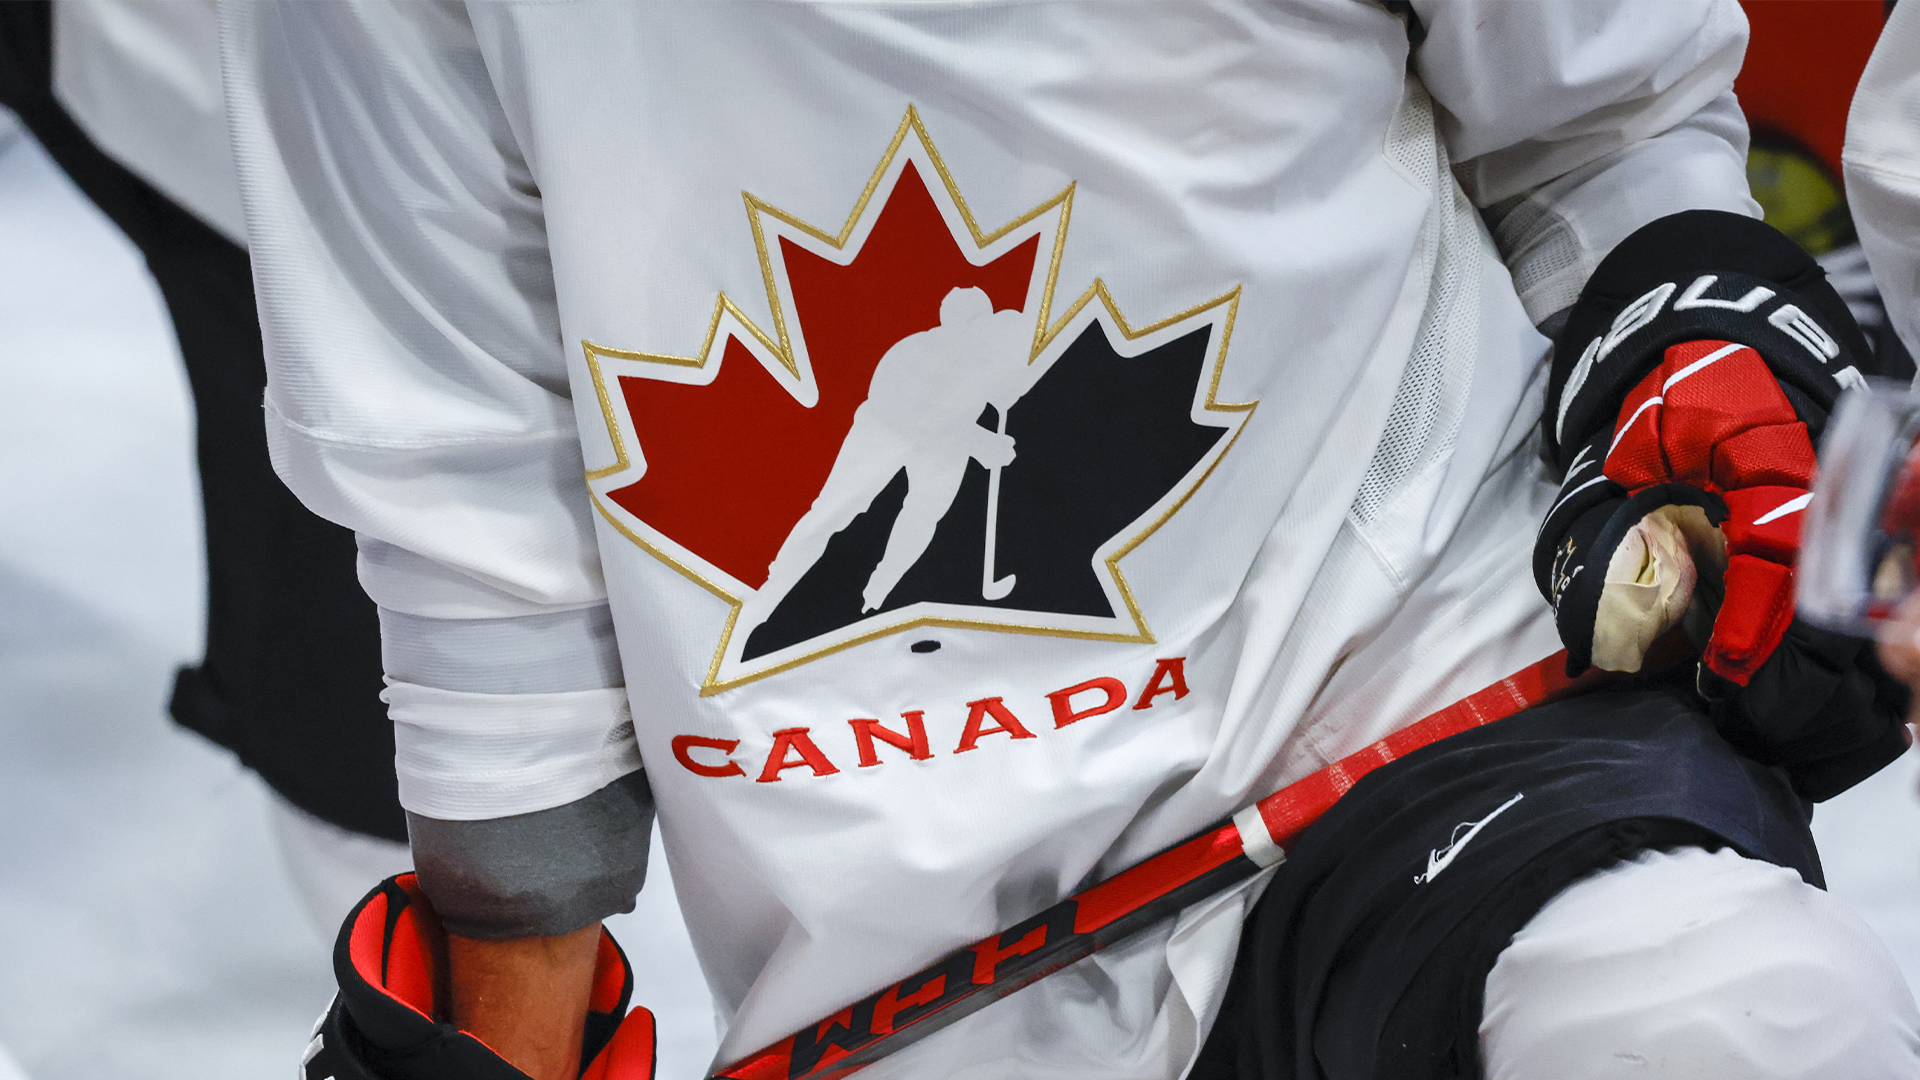  La présidente par intérim du conseil d'administration de Hockey Canada a affirmé mardi lors d'une comparution en comité parlementaire qu'il est «dans le meilleur intérêt» de la fédération et des joueurs que «la direction de l'organisation reste stable».